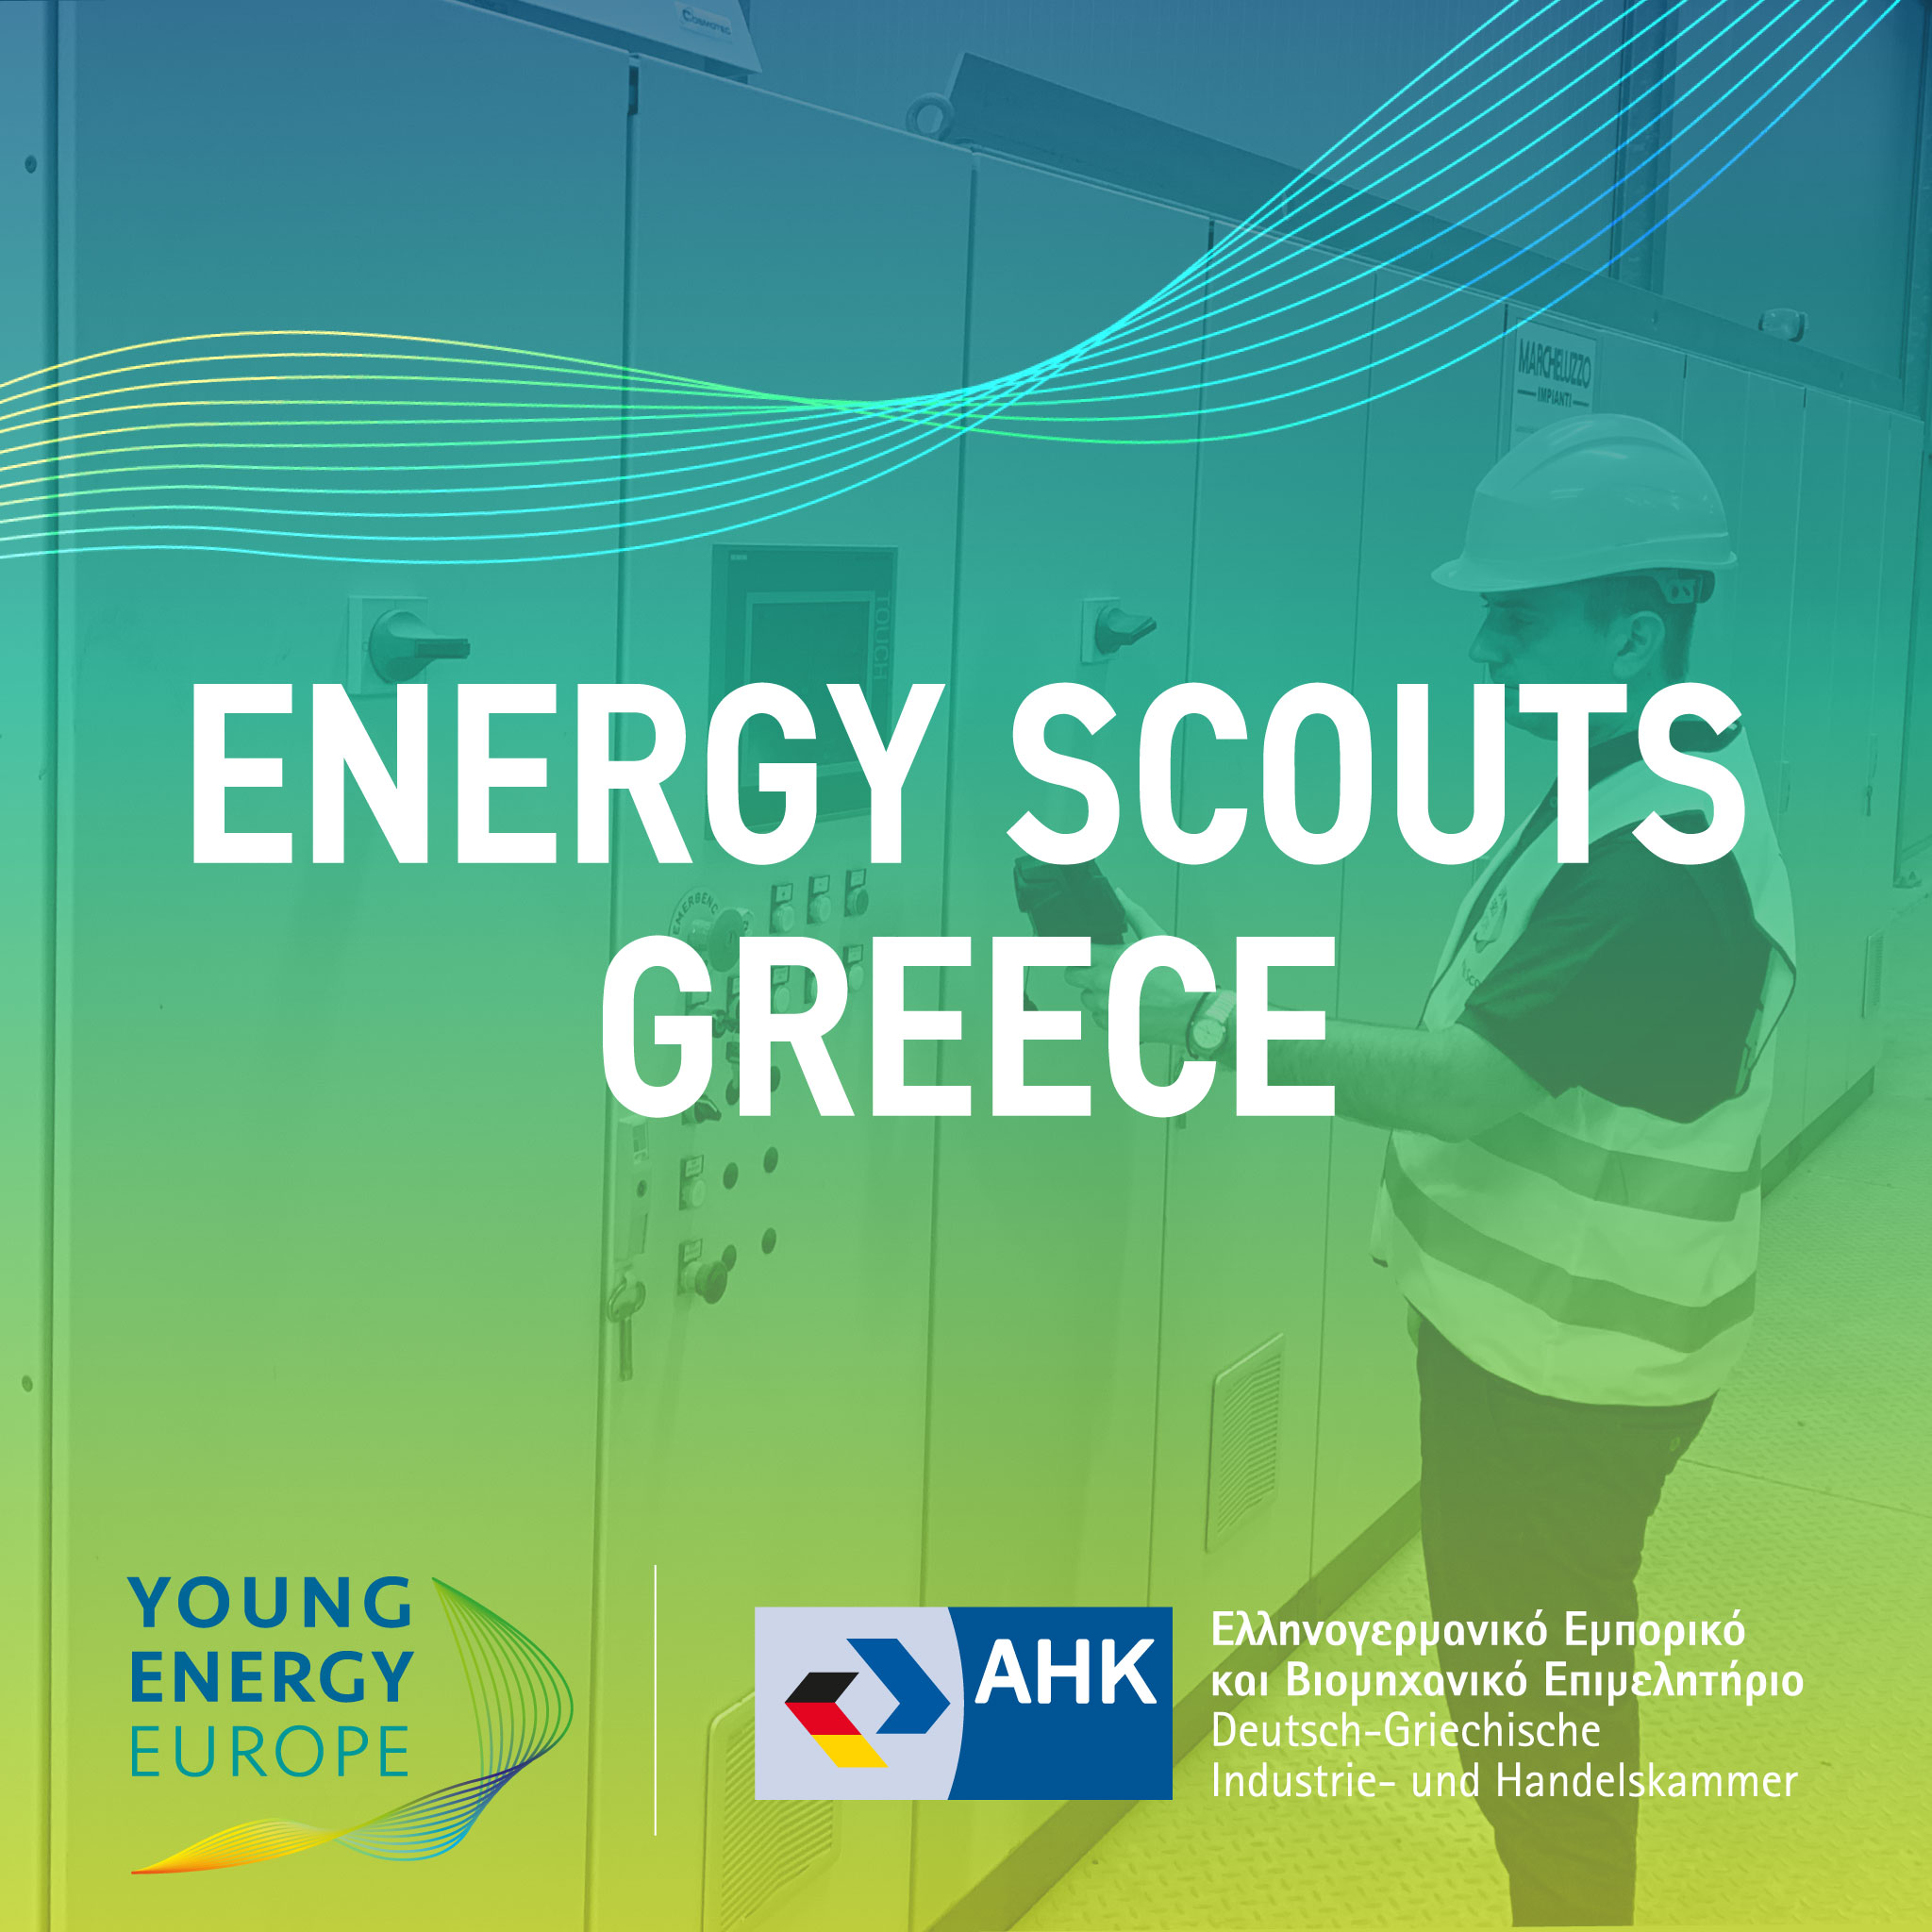 Ελληνογερμανικό Επιμελητήριο  Σε αντίστροφη μέτρηση για το 4ήμερο διαδικτυακό σεμινάριο εξοικονόμησης ενέργειας και πόρων, “Energy Scouts”